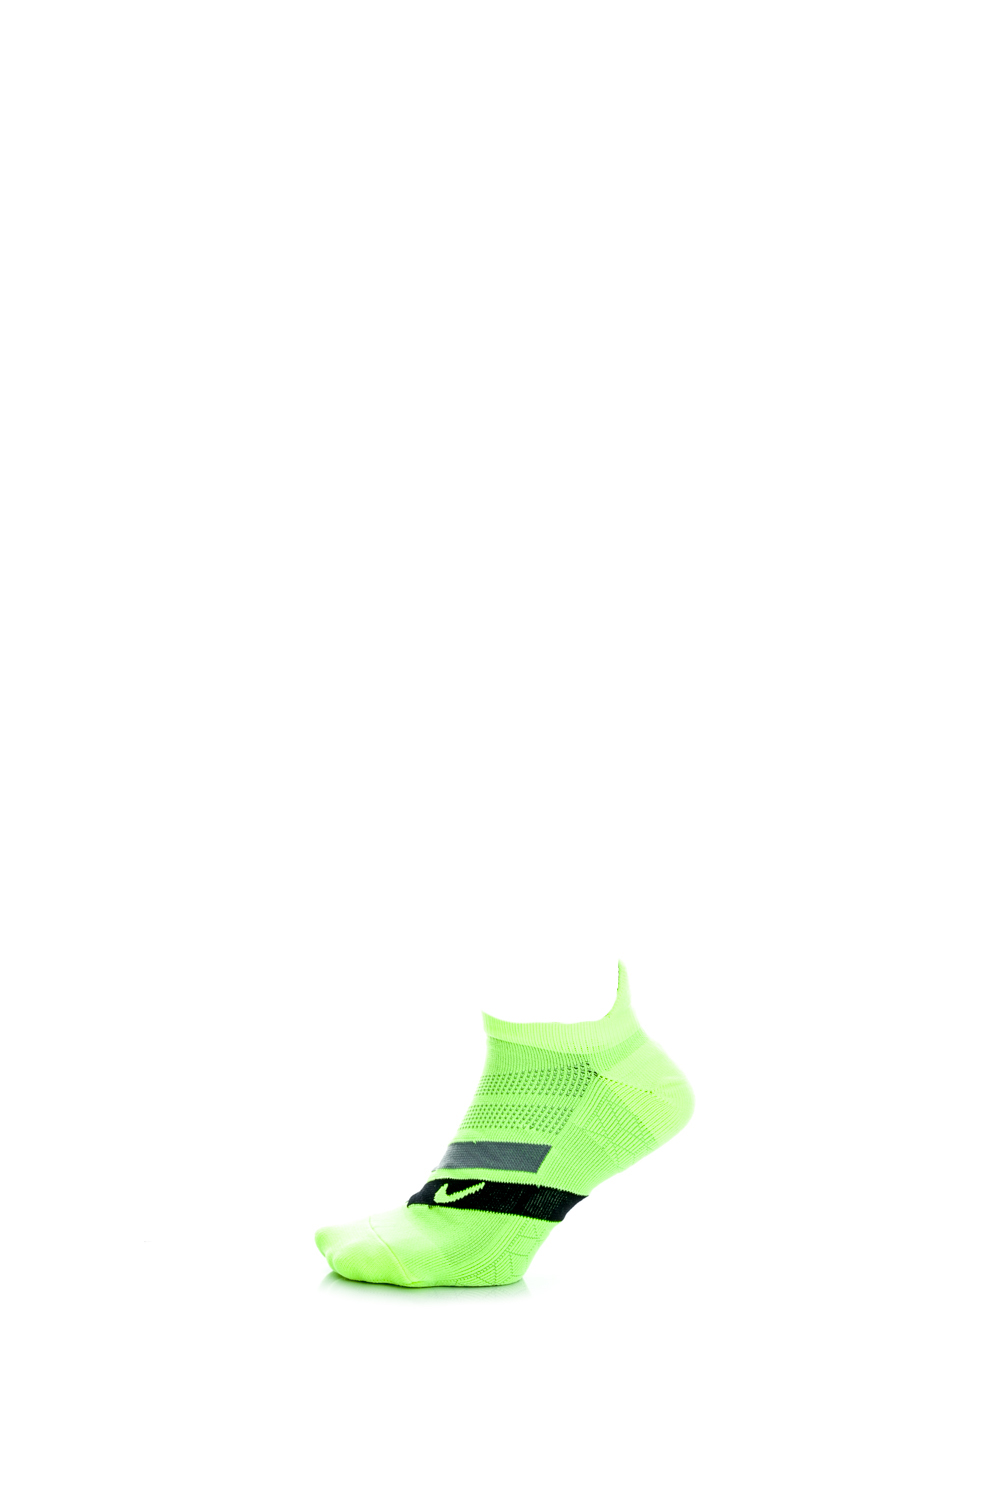 Γυναικεία/Αξεσουάρ/Κάλτσες NIKE - Unisex αθλητικές κάλτσες Nike PERF CUSH NS-RN κίτρινες